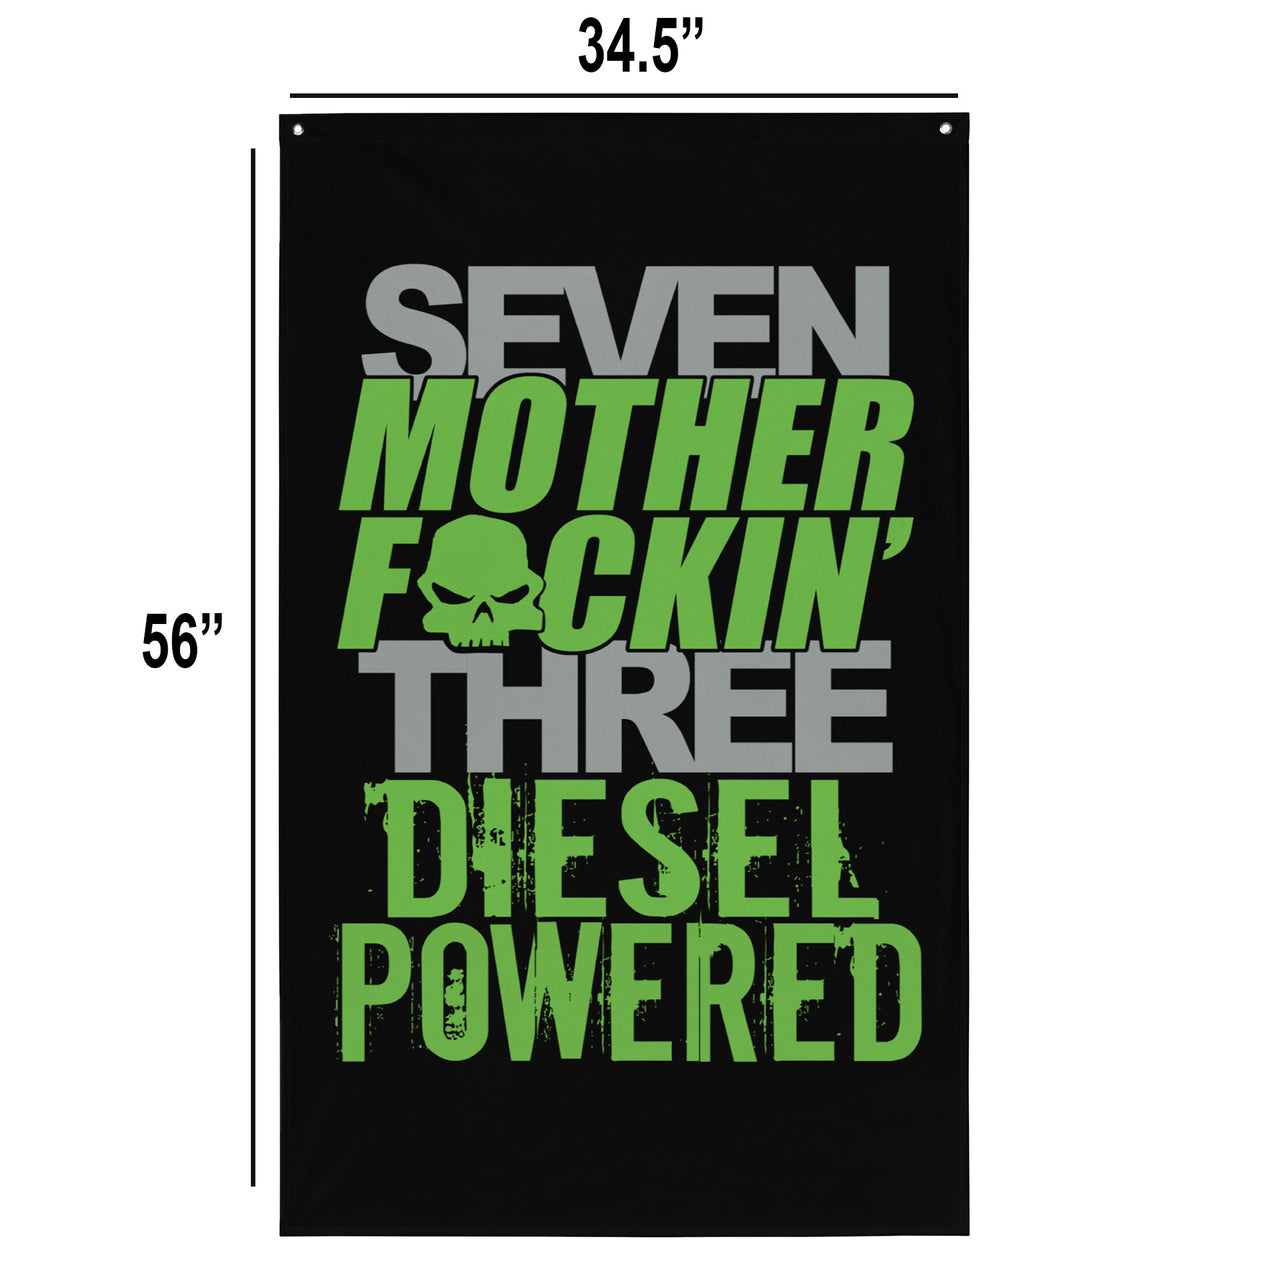 7.3 Power Stroke Diesel Flag dimensions